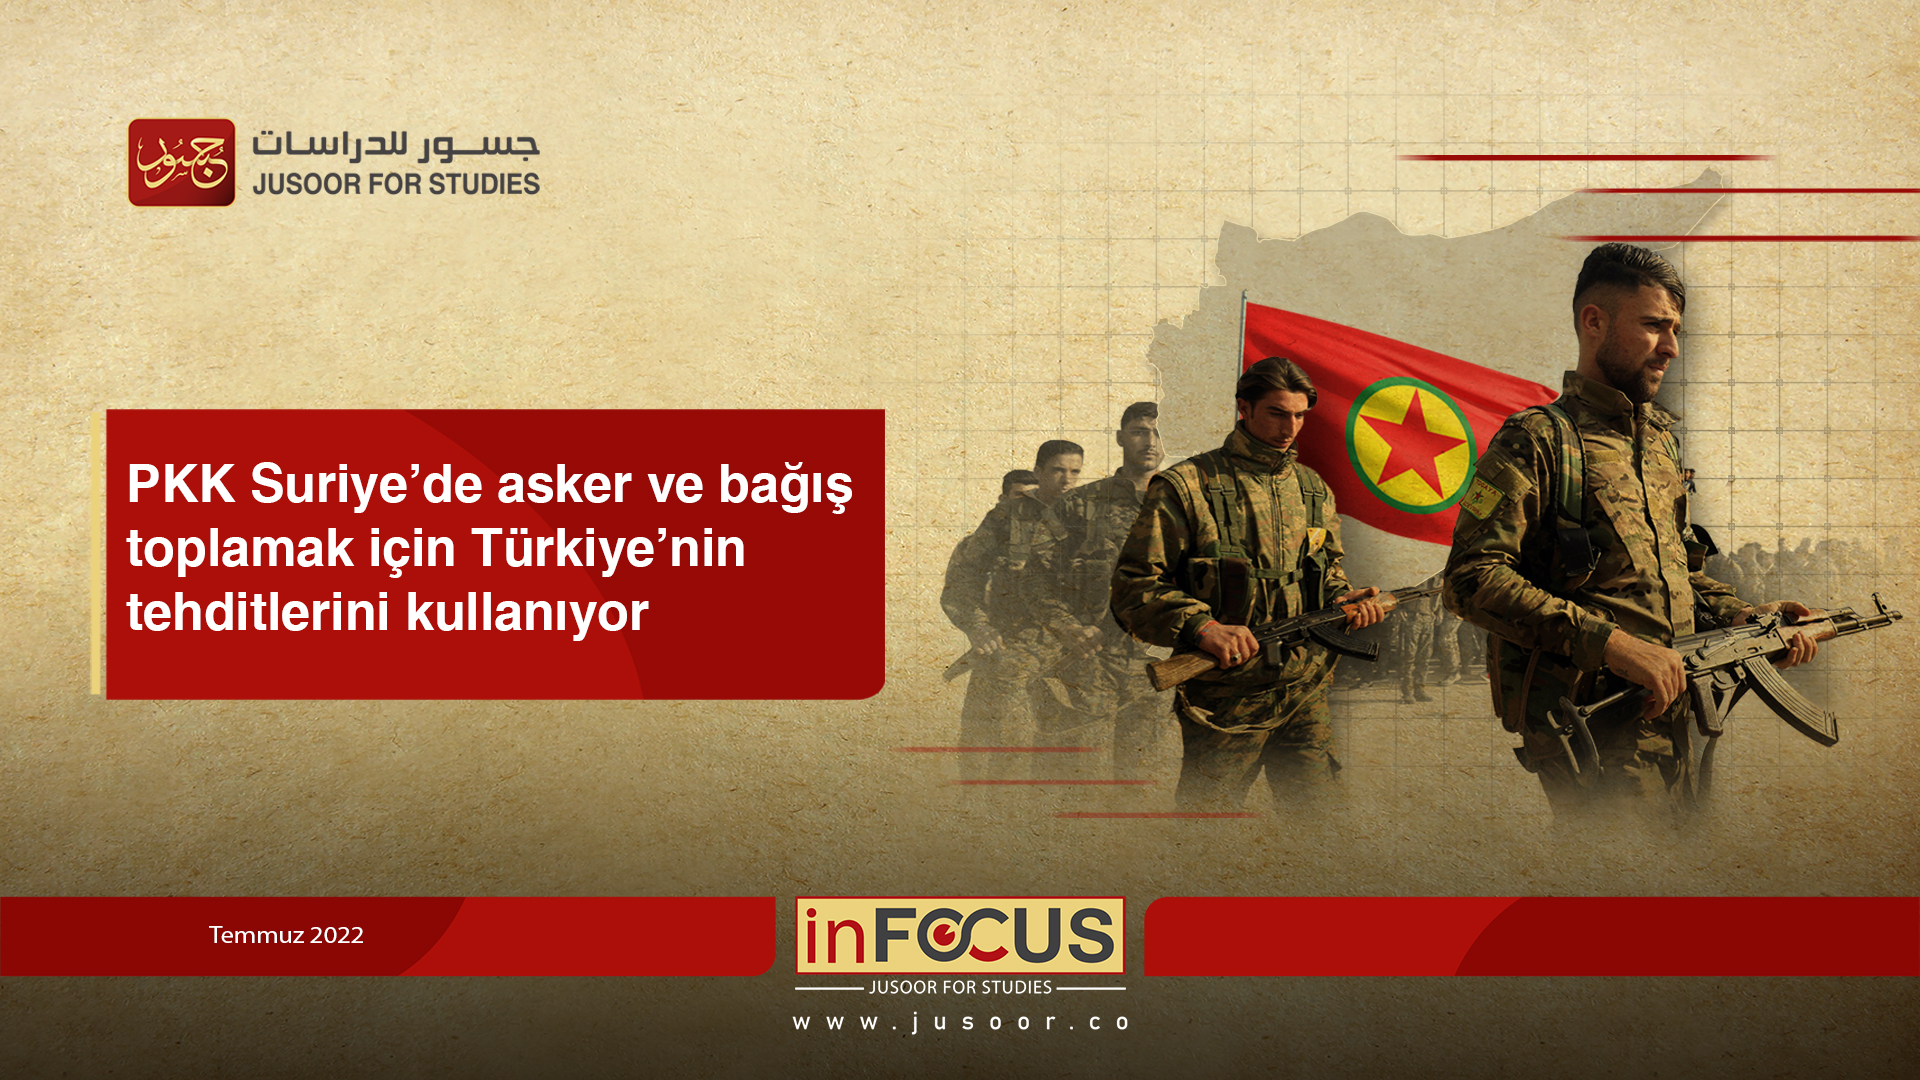 PKK Suriye’de asker ve bağış toplamak için Türkiye’nin tehditlerini kullanıyor